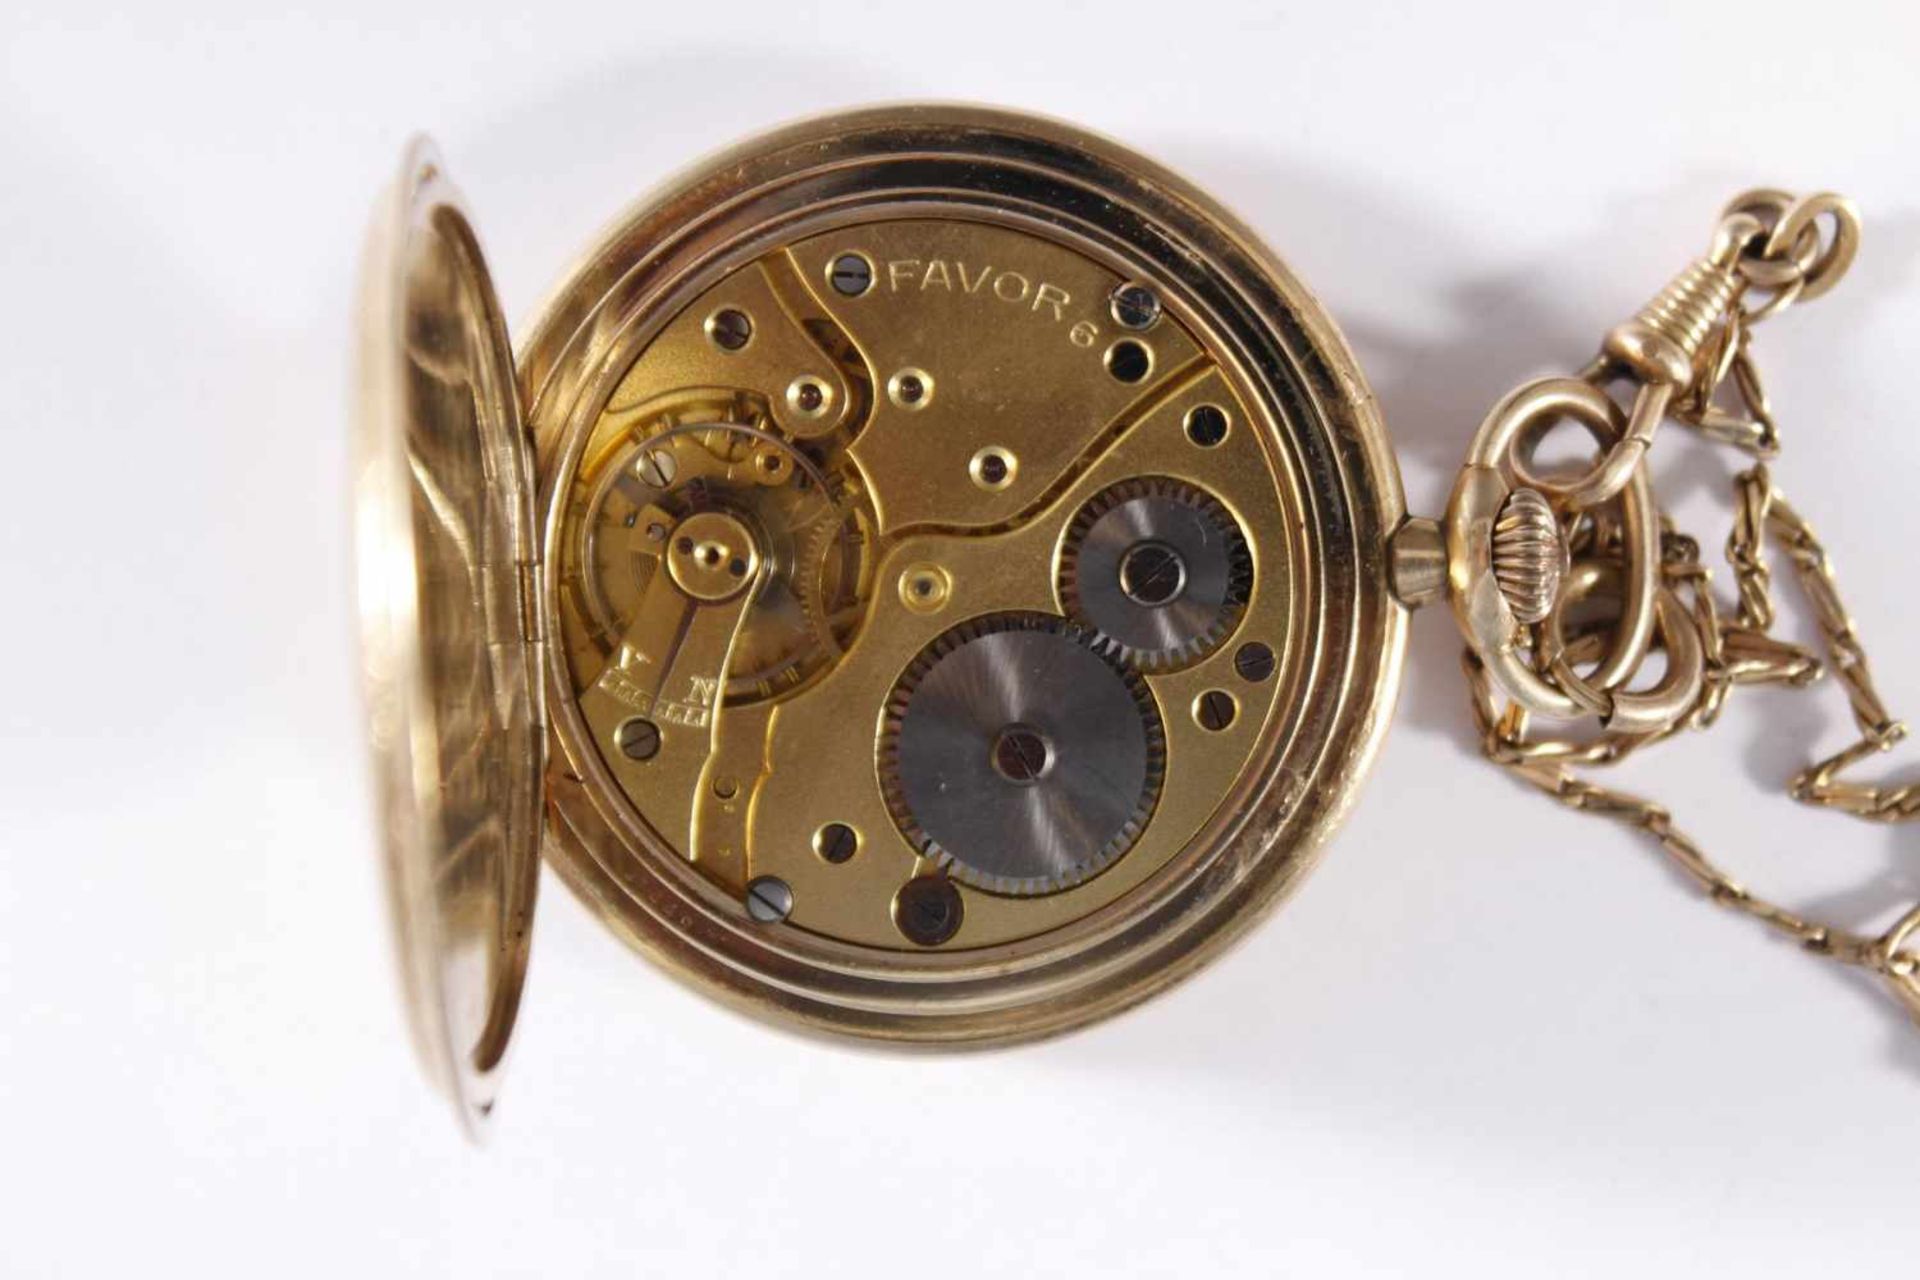 Pavor Sprungdeckeltaschenuhr mit Uhrenkette, vergoldet - Image 4 of 4